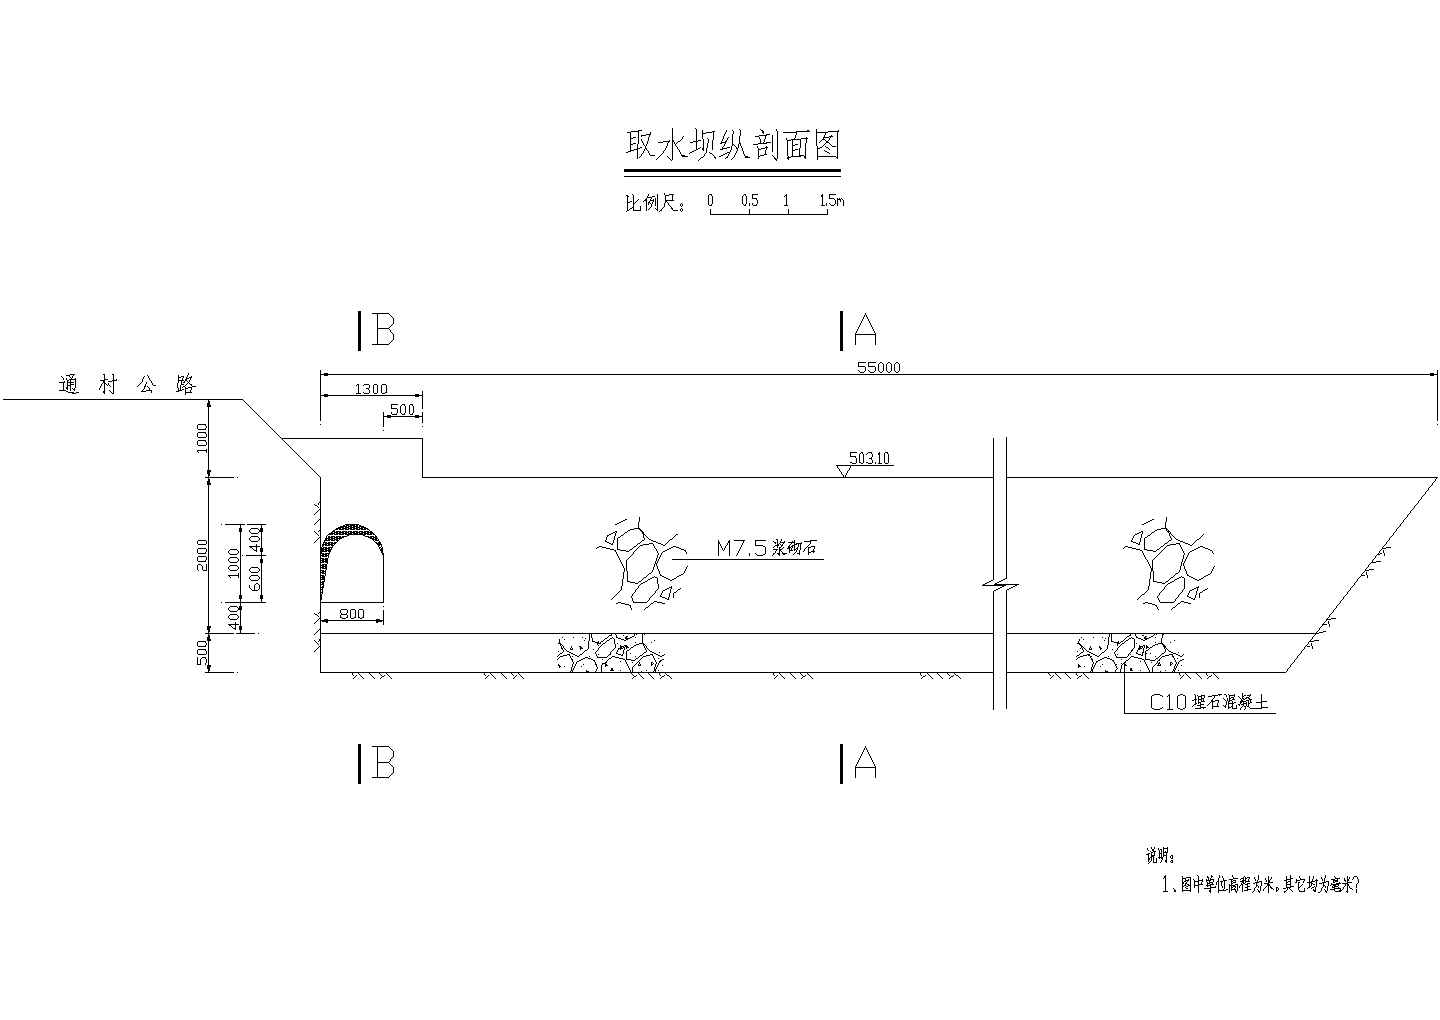 厂房设计_【上海】某乡镇供水工程公司全体建筑施工设计cad图(含厂房动力、照明系统布置图)